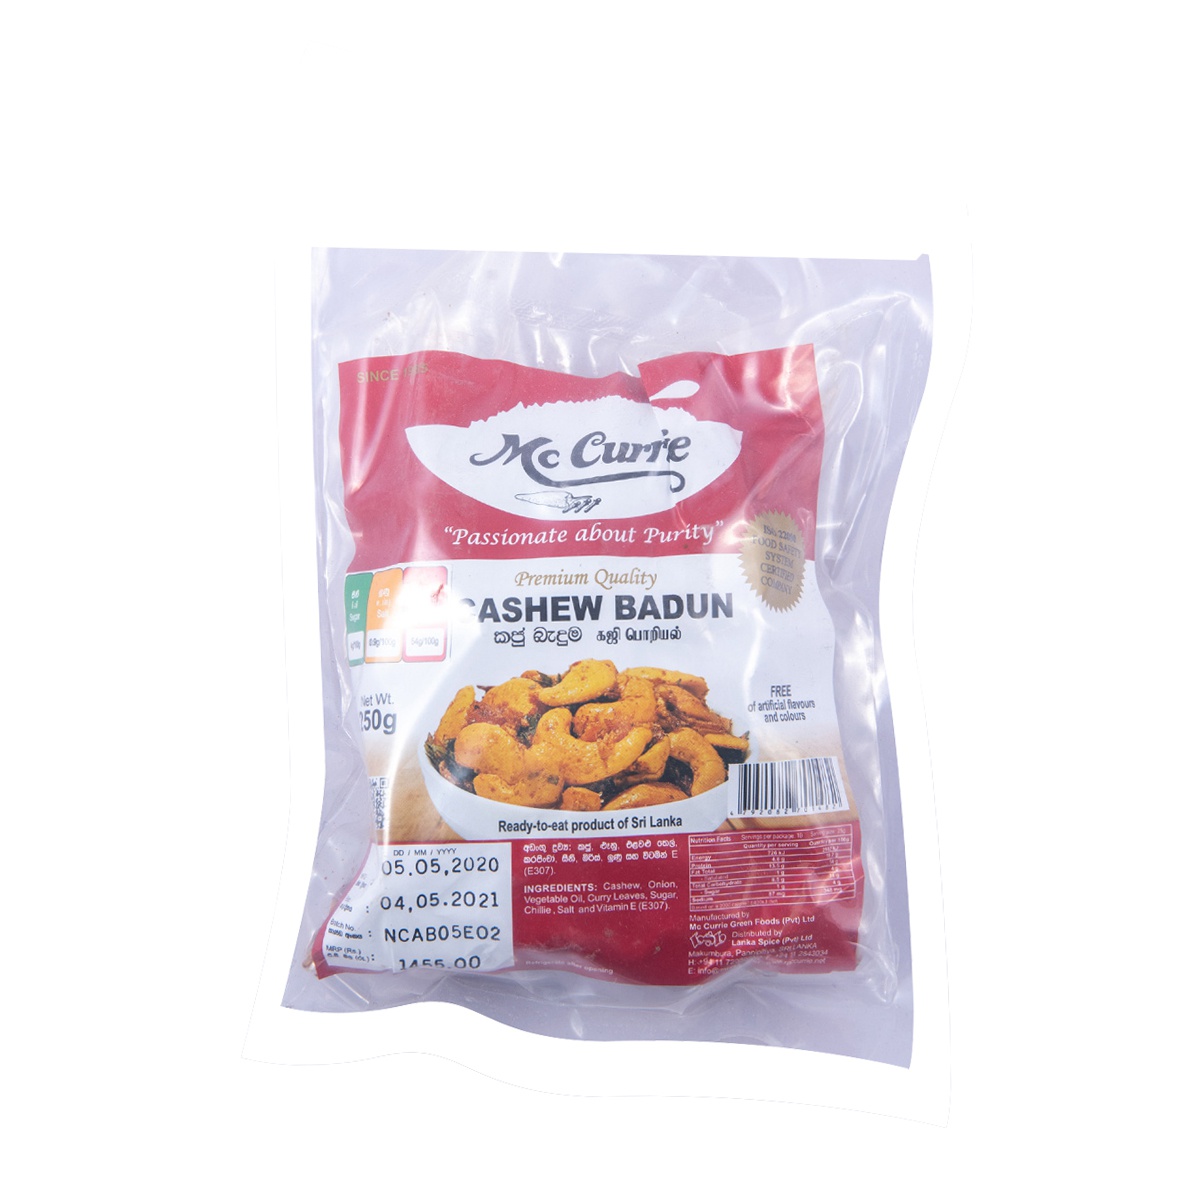 Mccurrie Cashew Badun V/P 250G - MCCURRIE - Condiments - in Sri Lanka